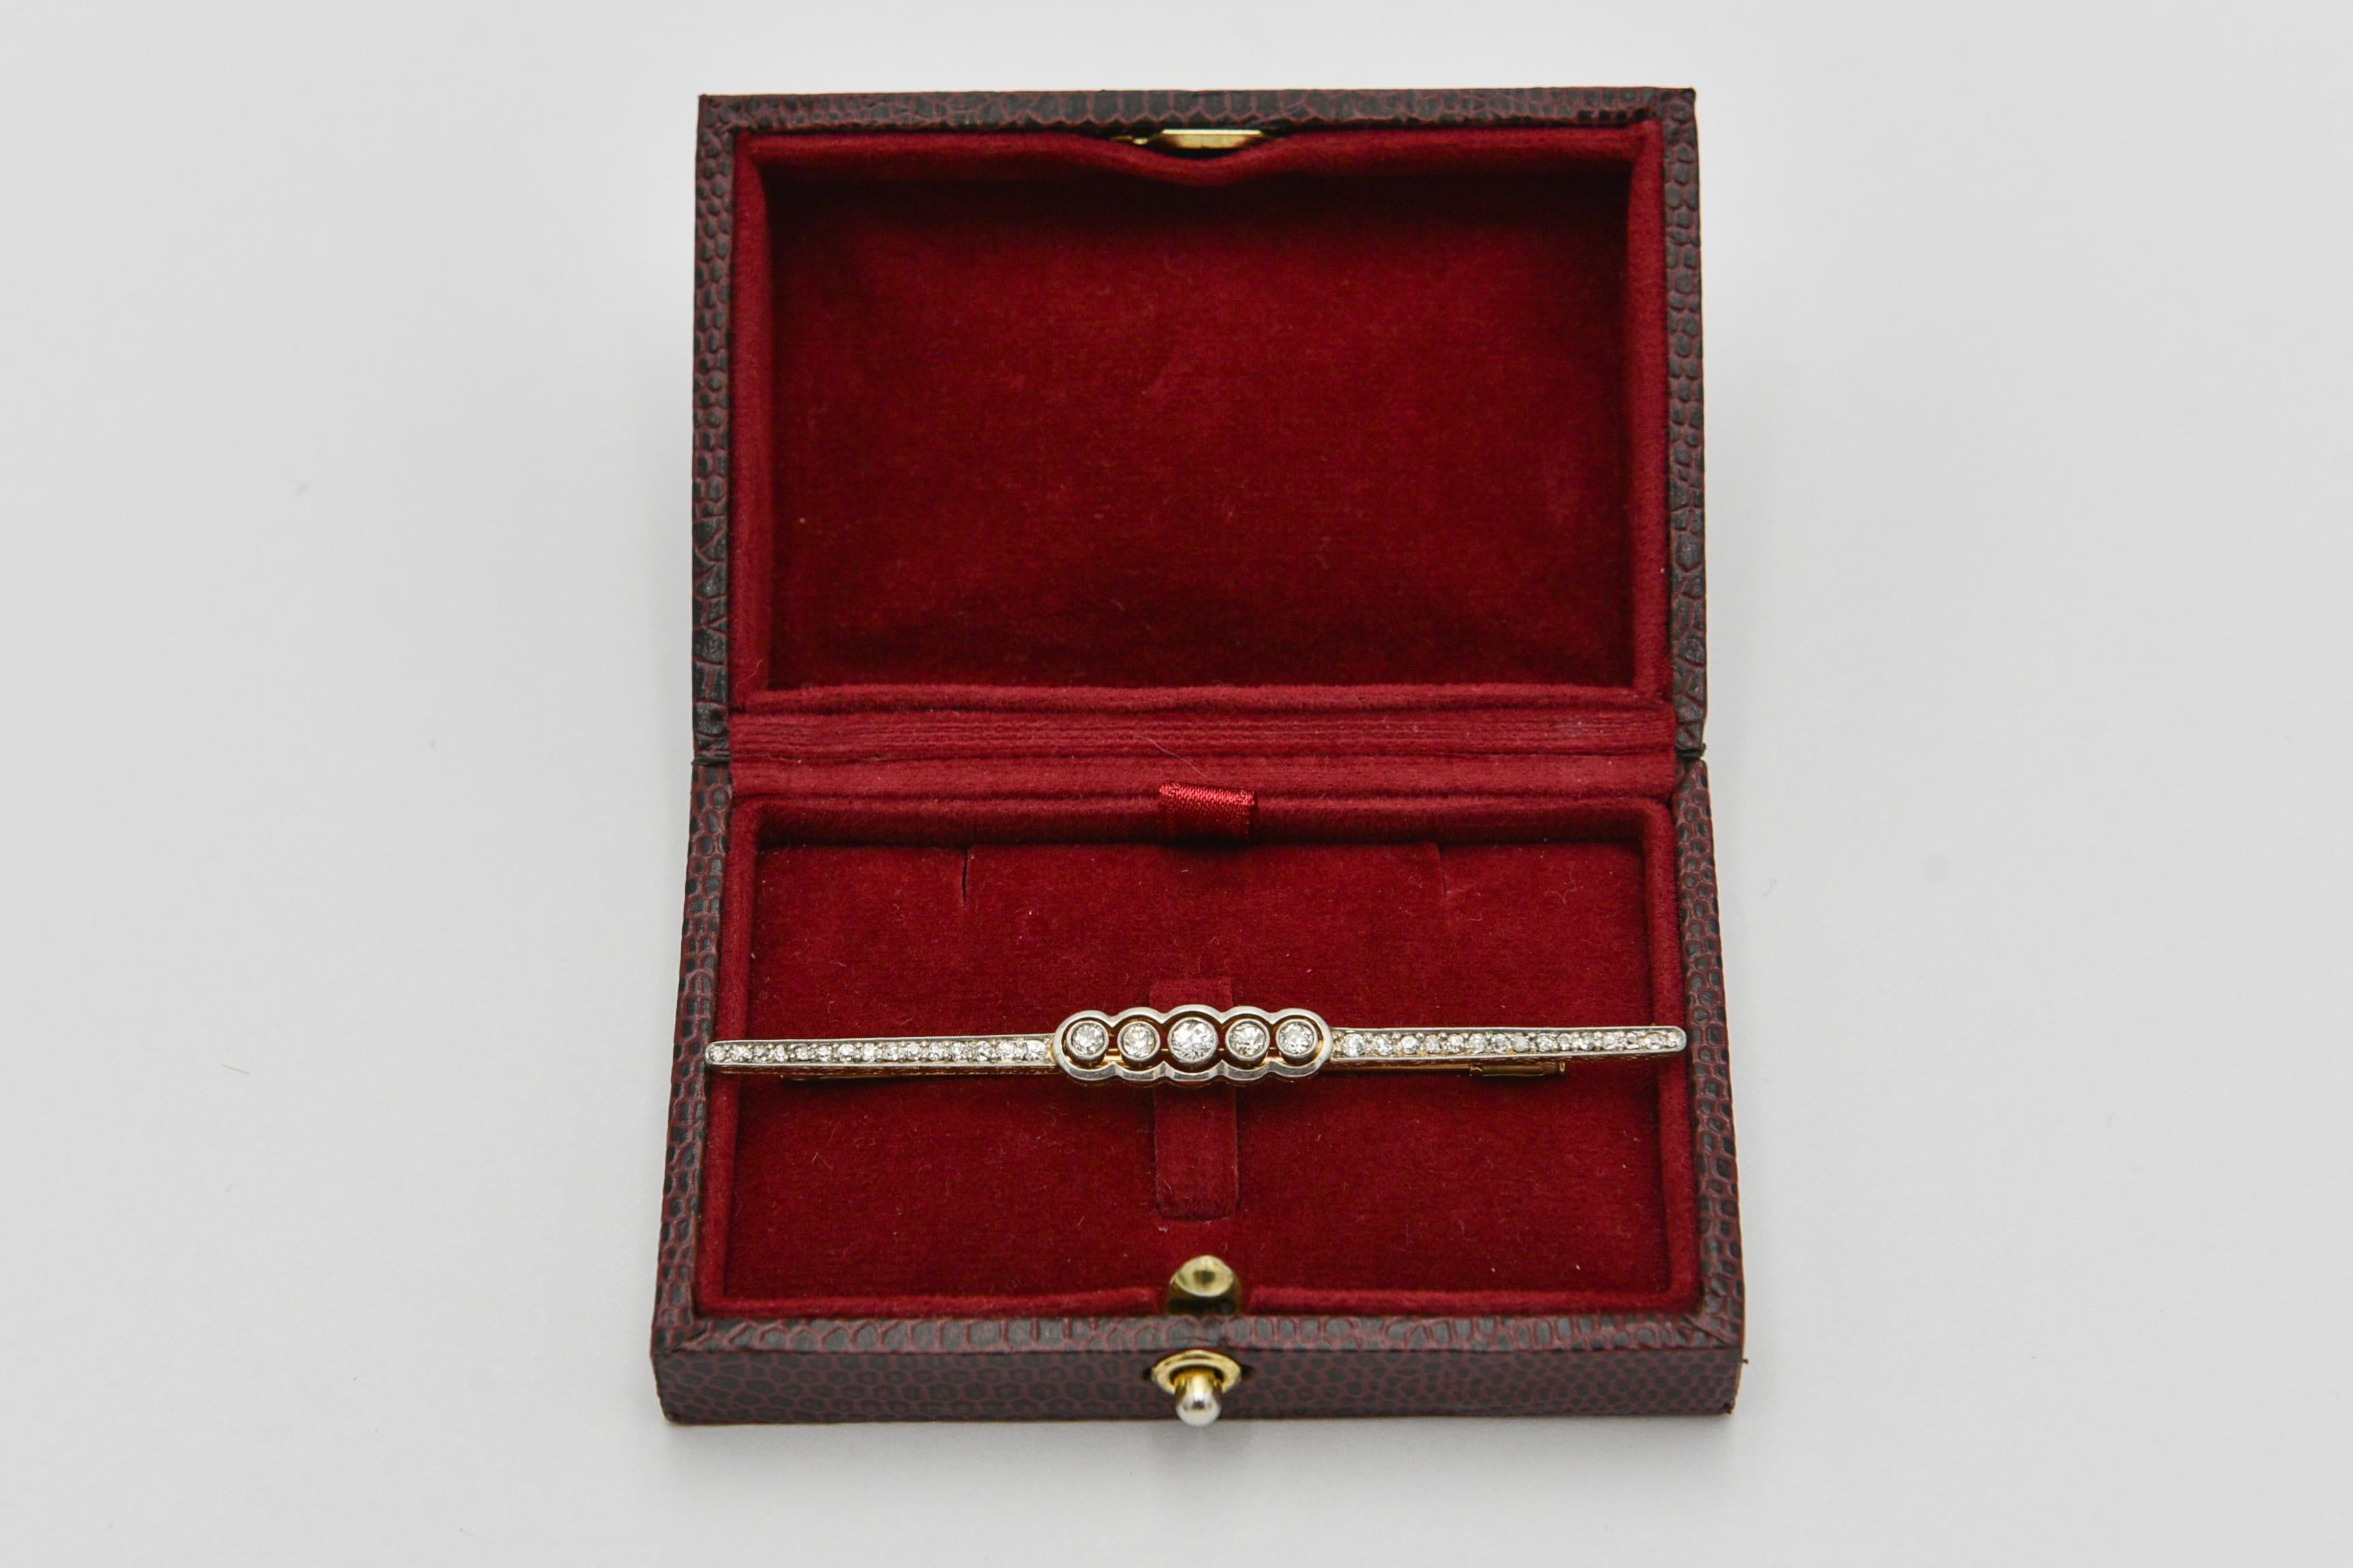 Broche ancienne en or avec éléments en platine avec perle et diamants

Perle de culture d'eau salée en serti central et 16 diamants d'un poids total d'environ 2,7 ct (couleur G-I pureté SI1-I1).

Origine : Espagne

Année : vers 1930

Poids : 8,12